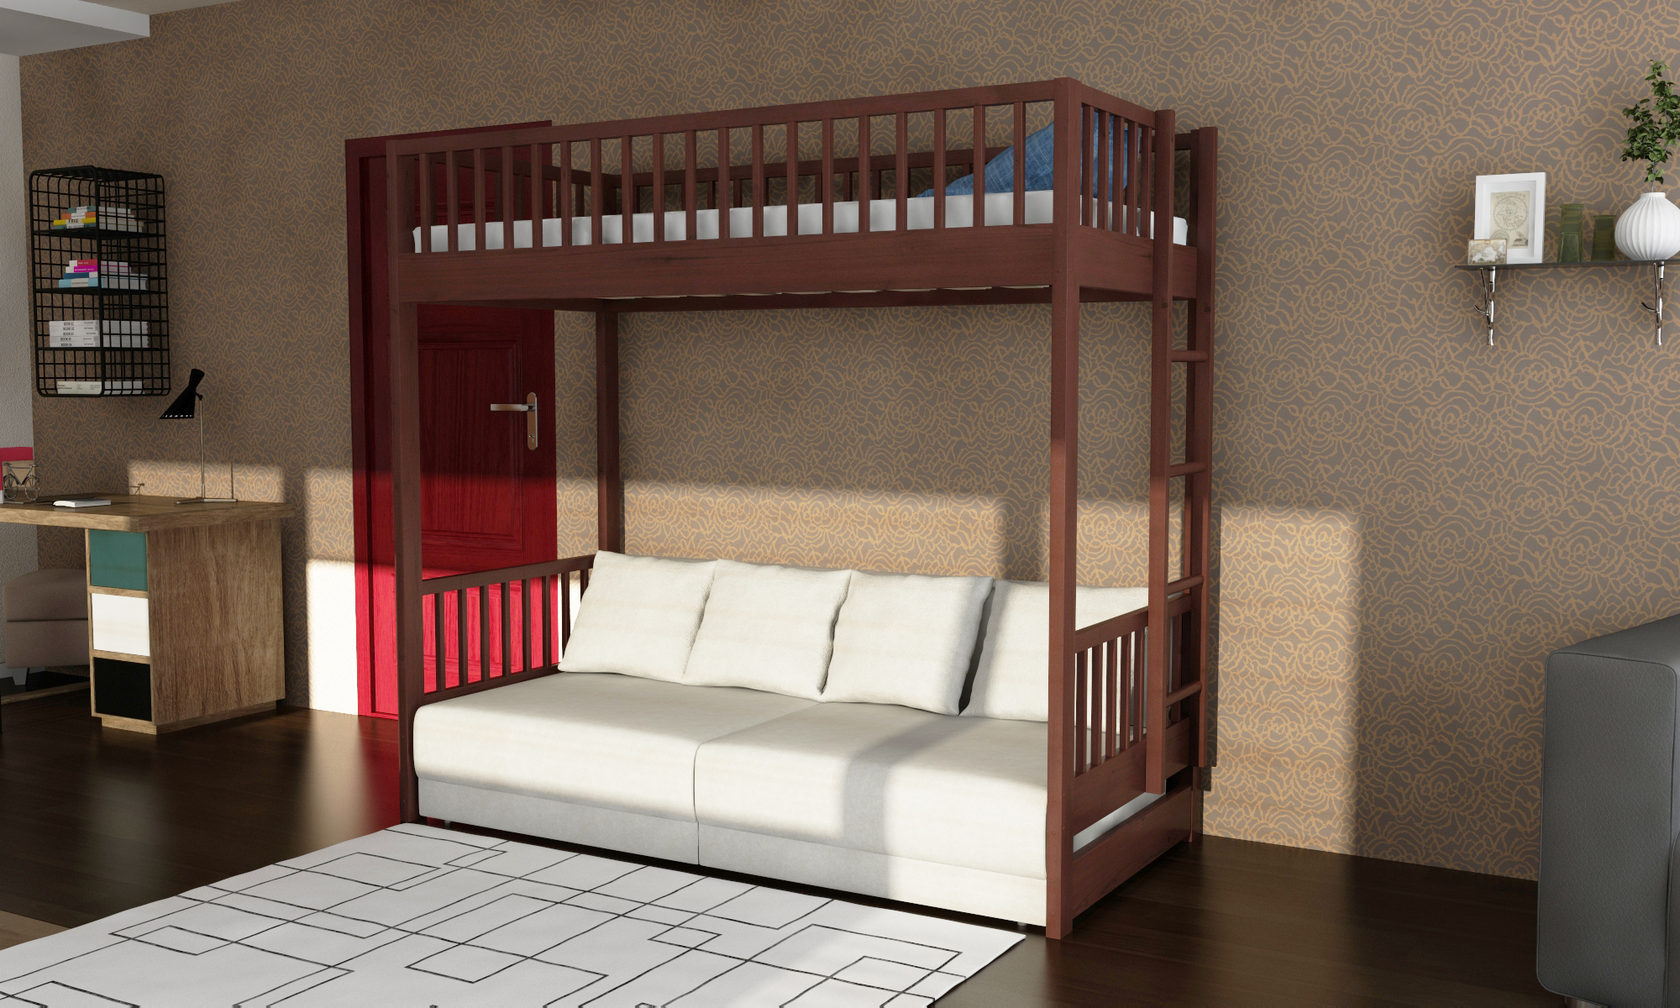 Двухъярусная кровать с диваном внизу для родителей в магазине “Мебельный терем”